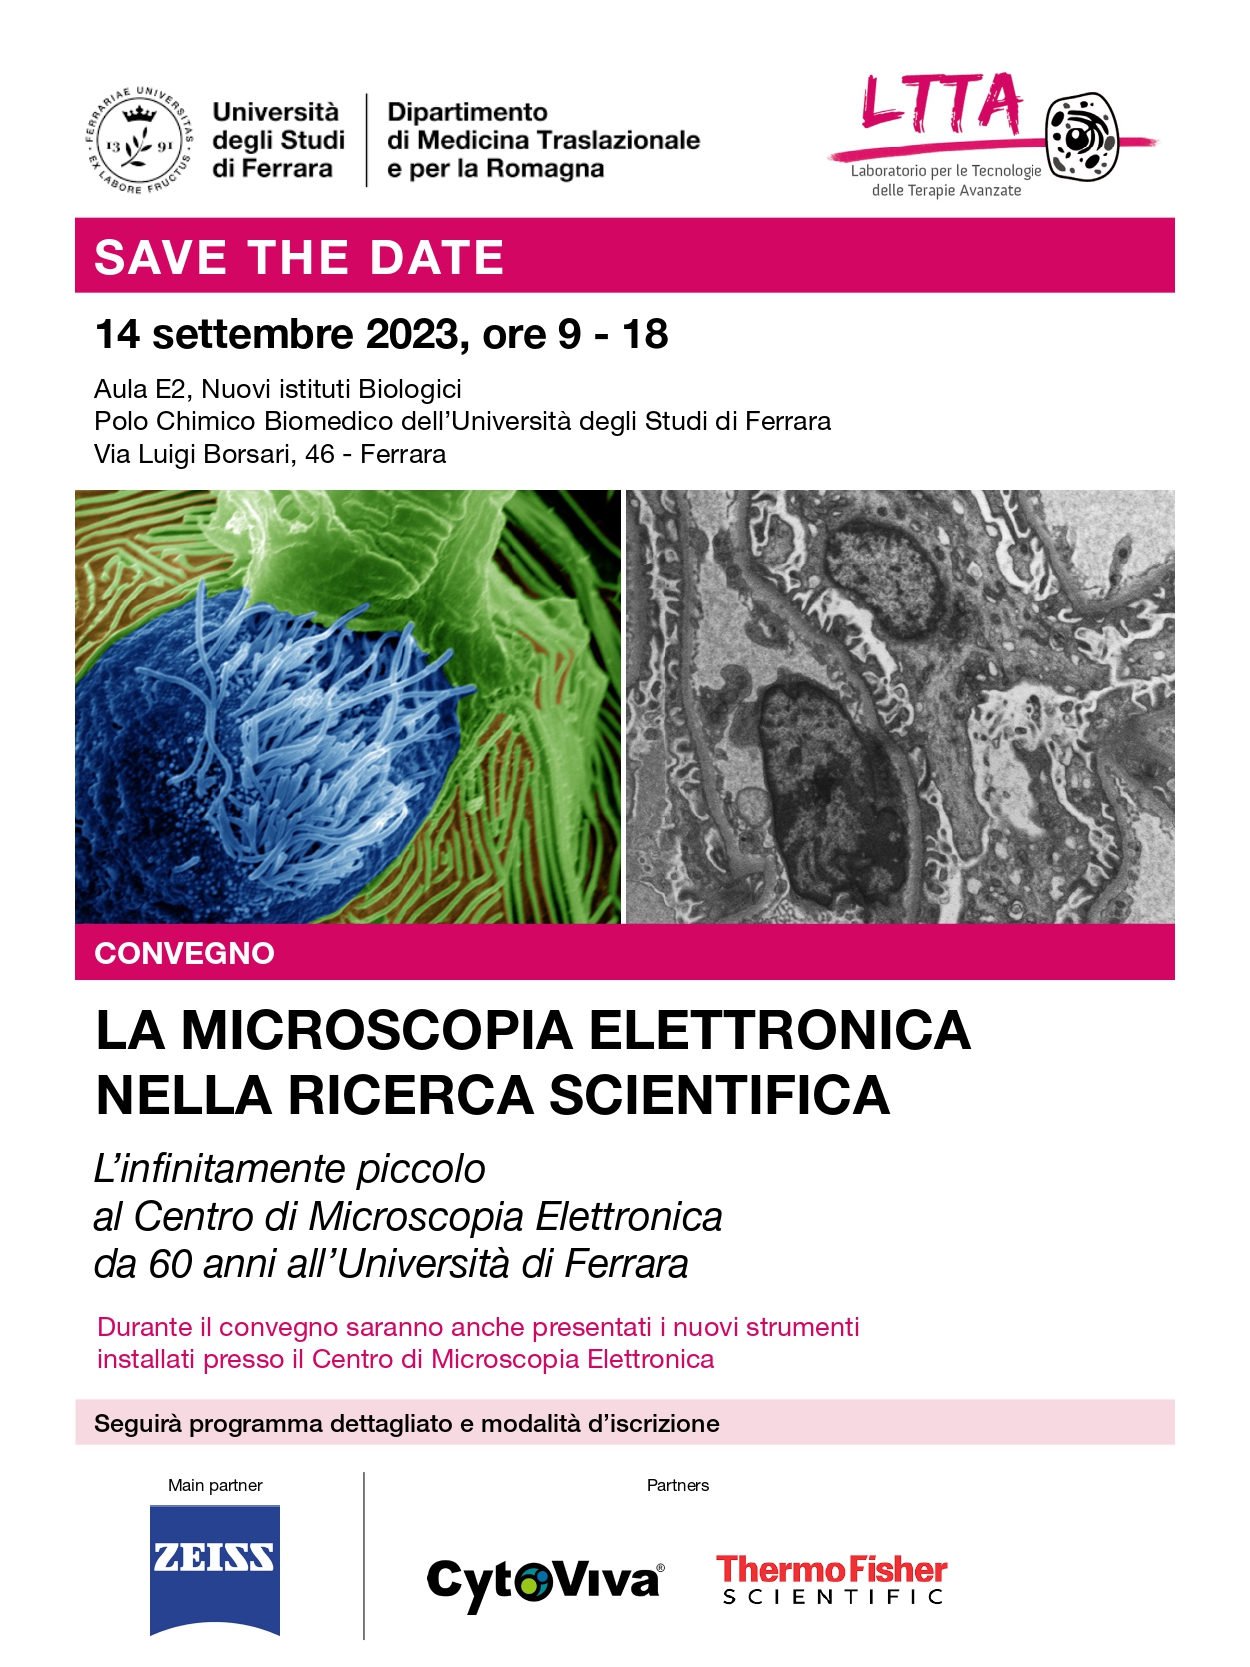 Convegno "La Microscopia Elettronica nella ricerca scientifica. L'infinitamente piccolo al Centro di Microscopia Elettronica da 60 anni all'Università di Ferrara" | 14/09/2023